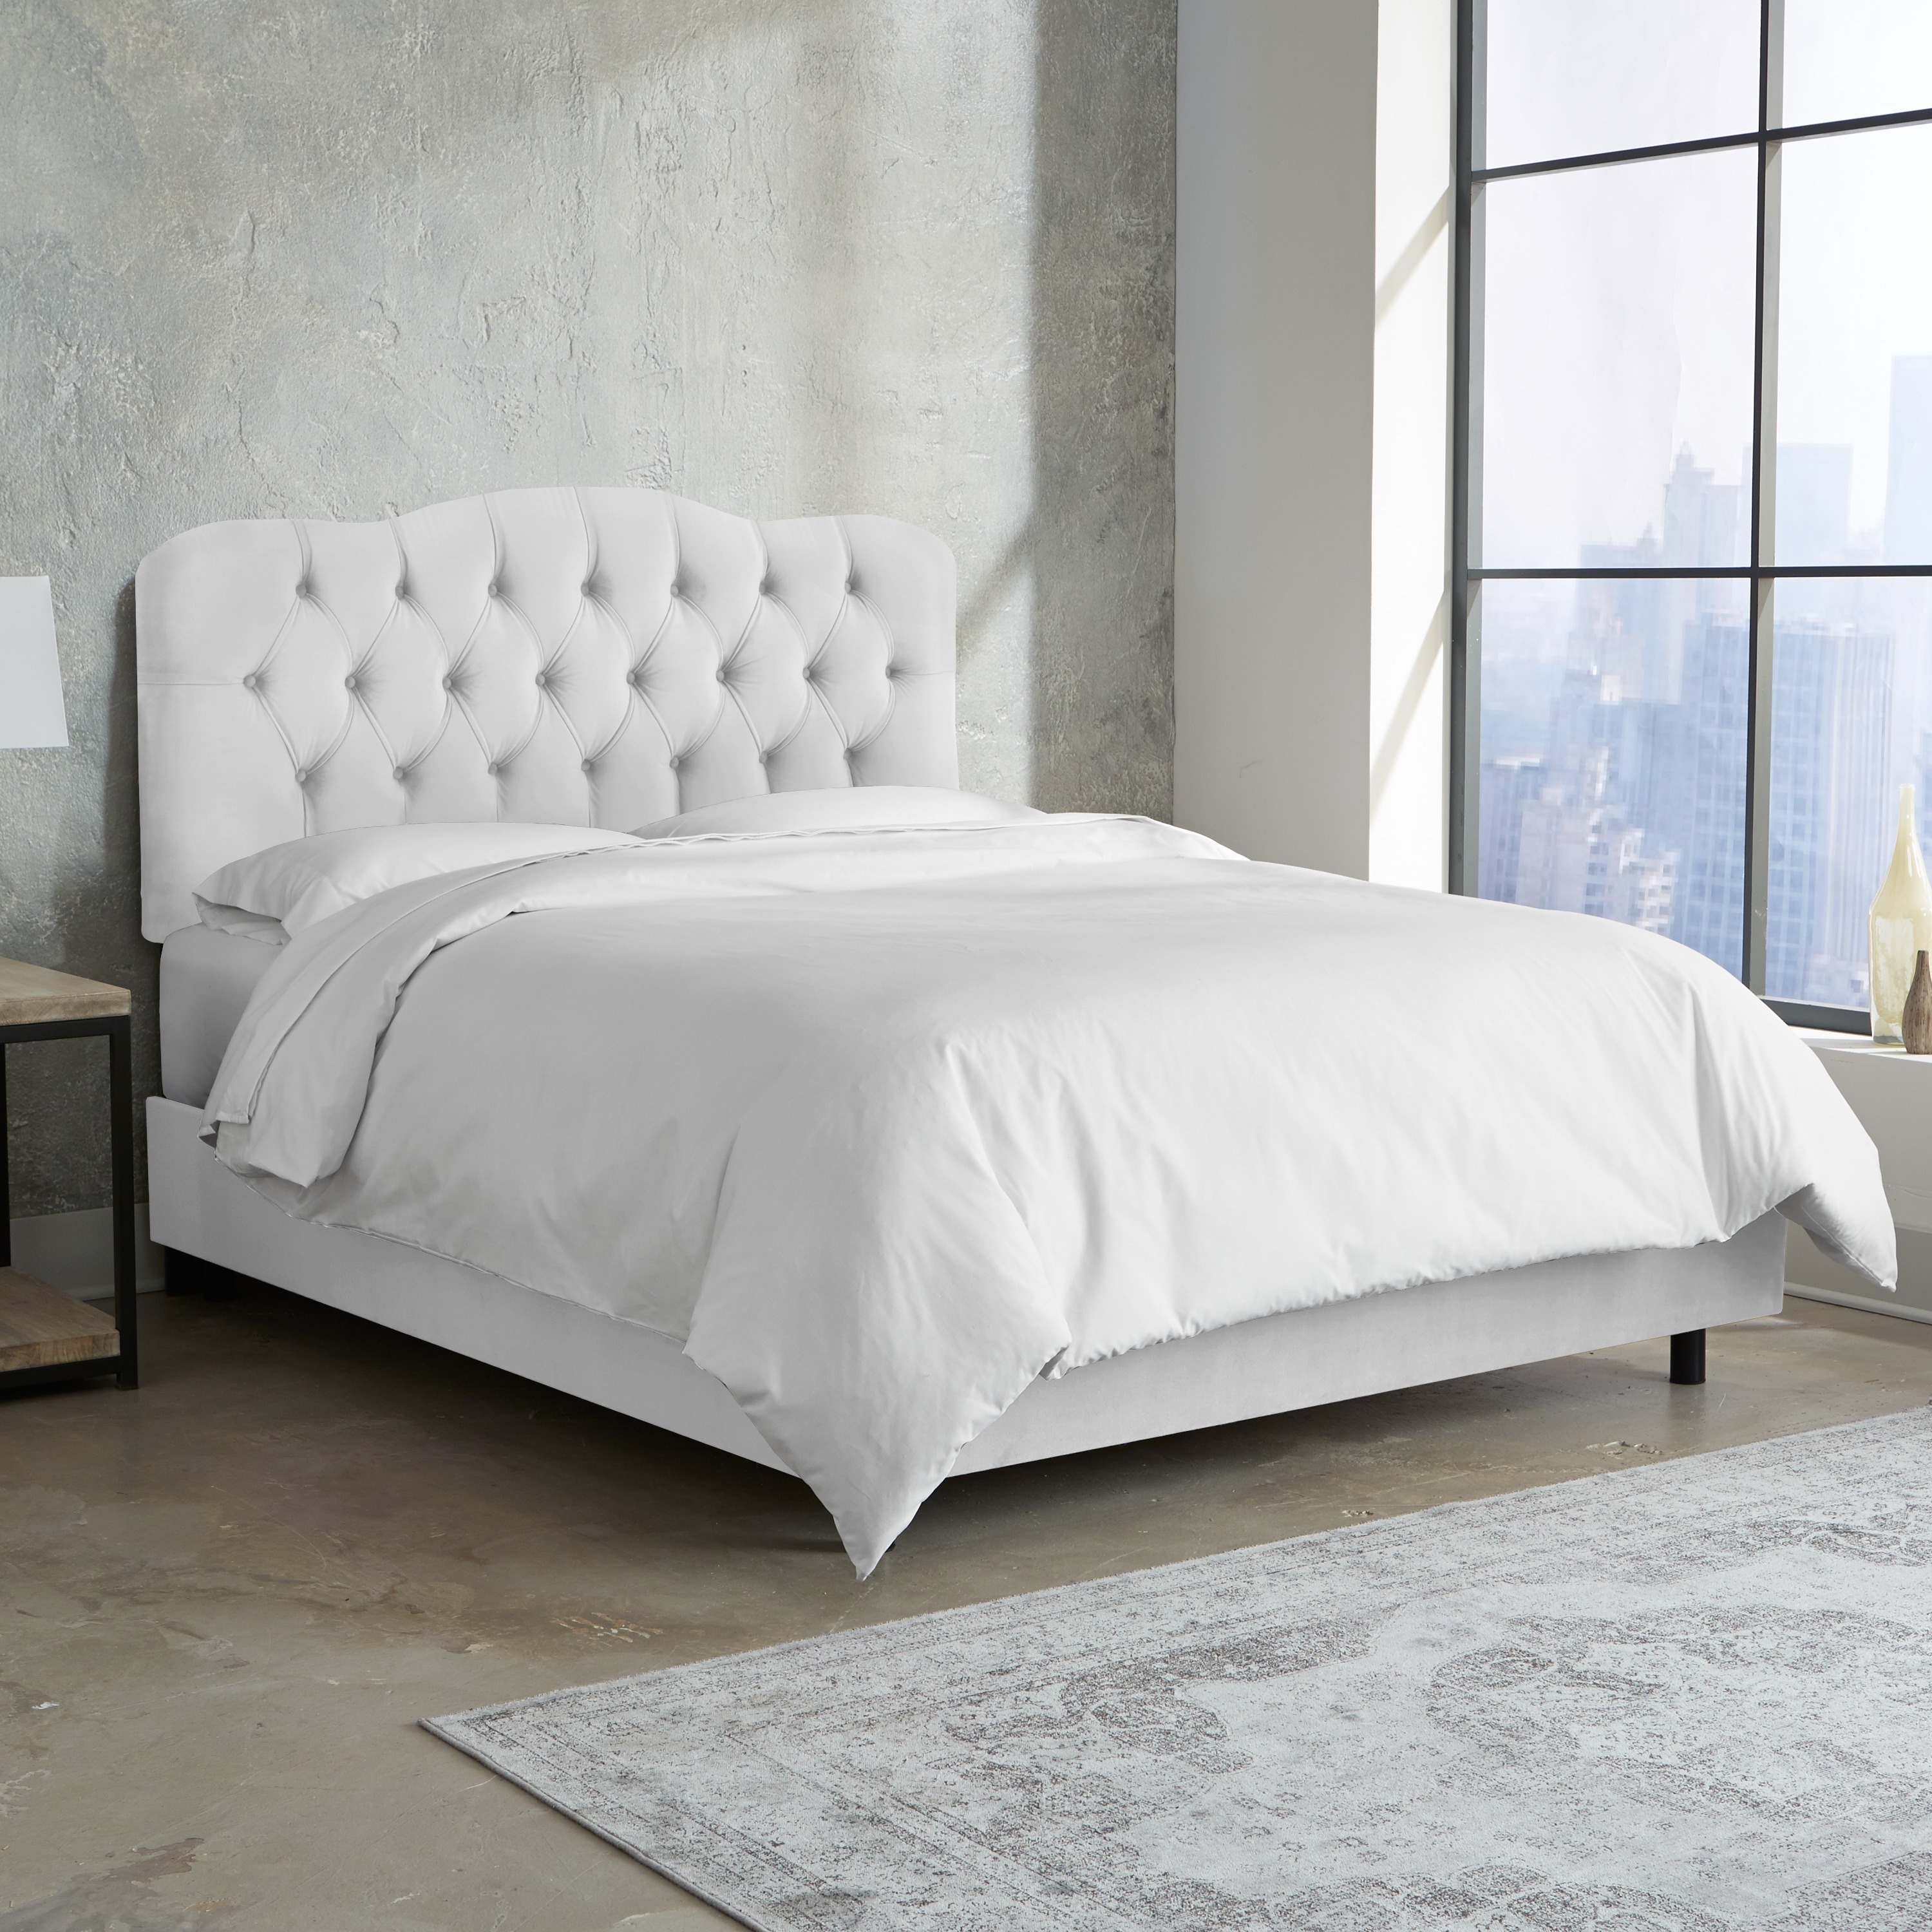 white tufted bedroom set